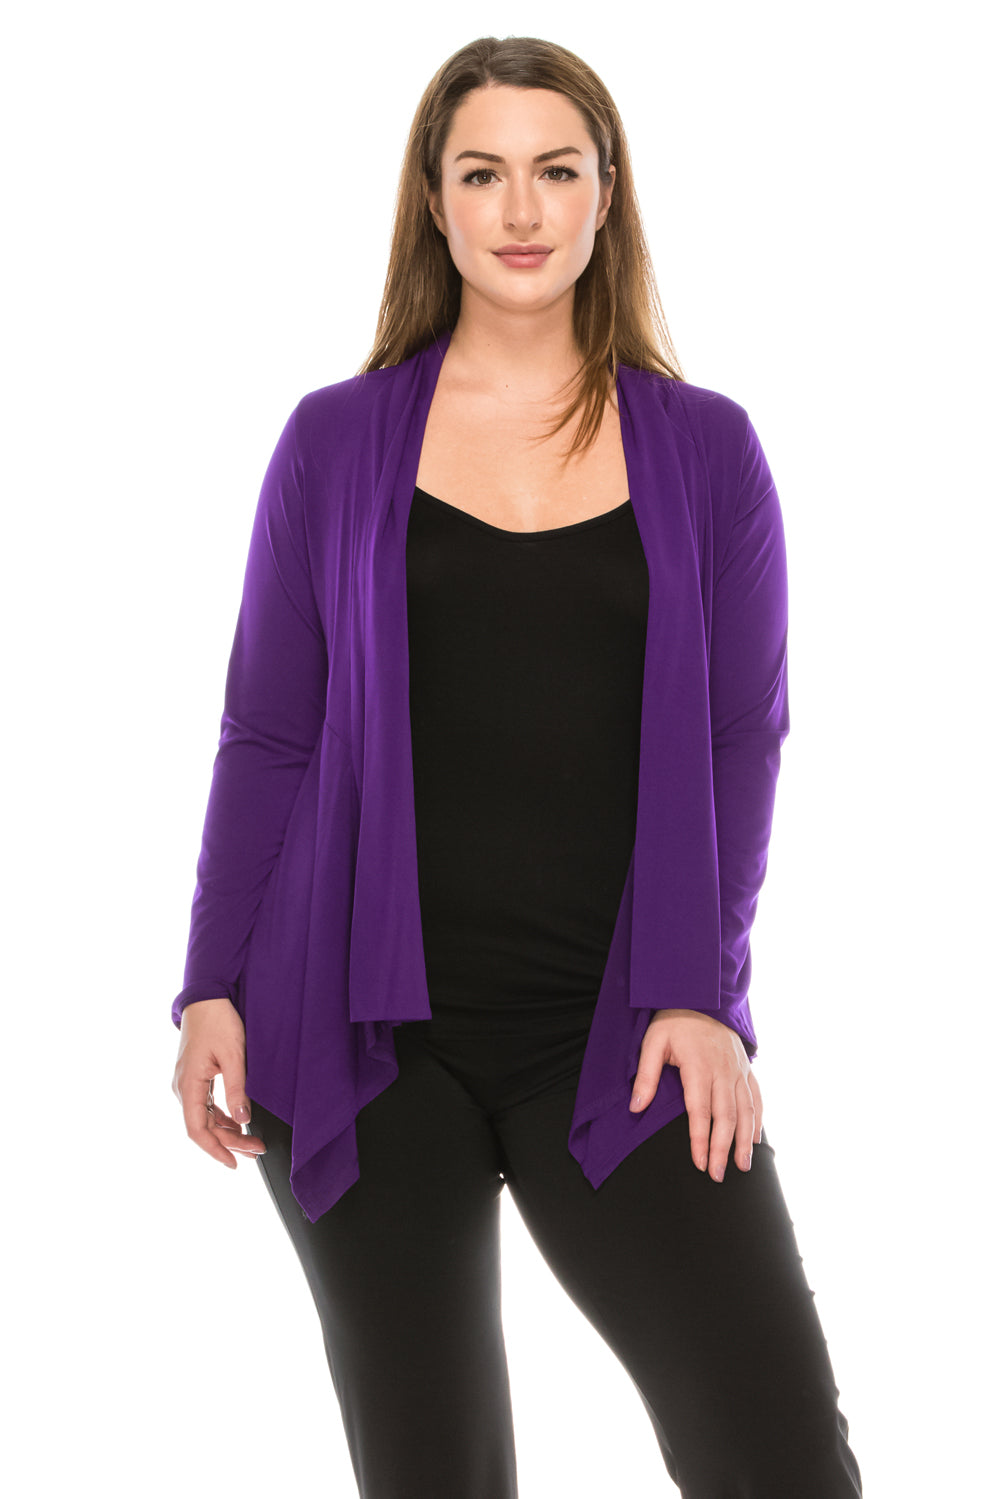 Jostar Women's Mid-cut Jacket Long Sleeve, 428HT-L - Jostar Online